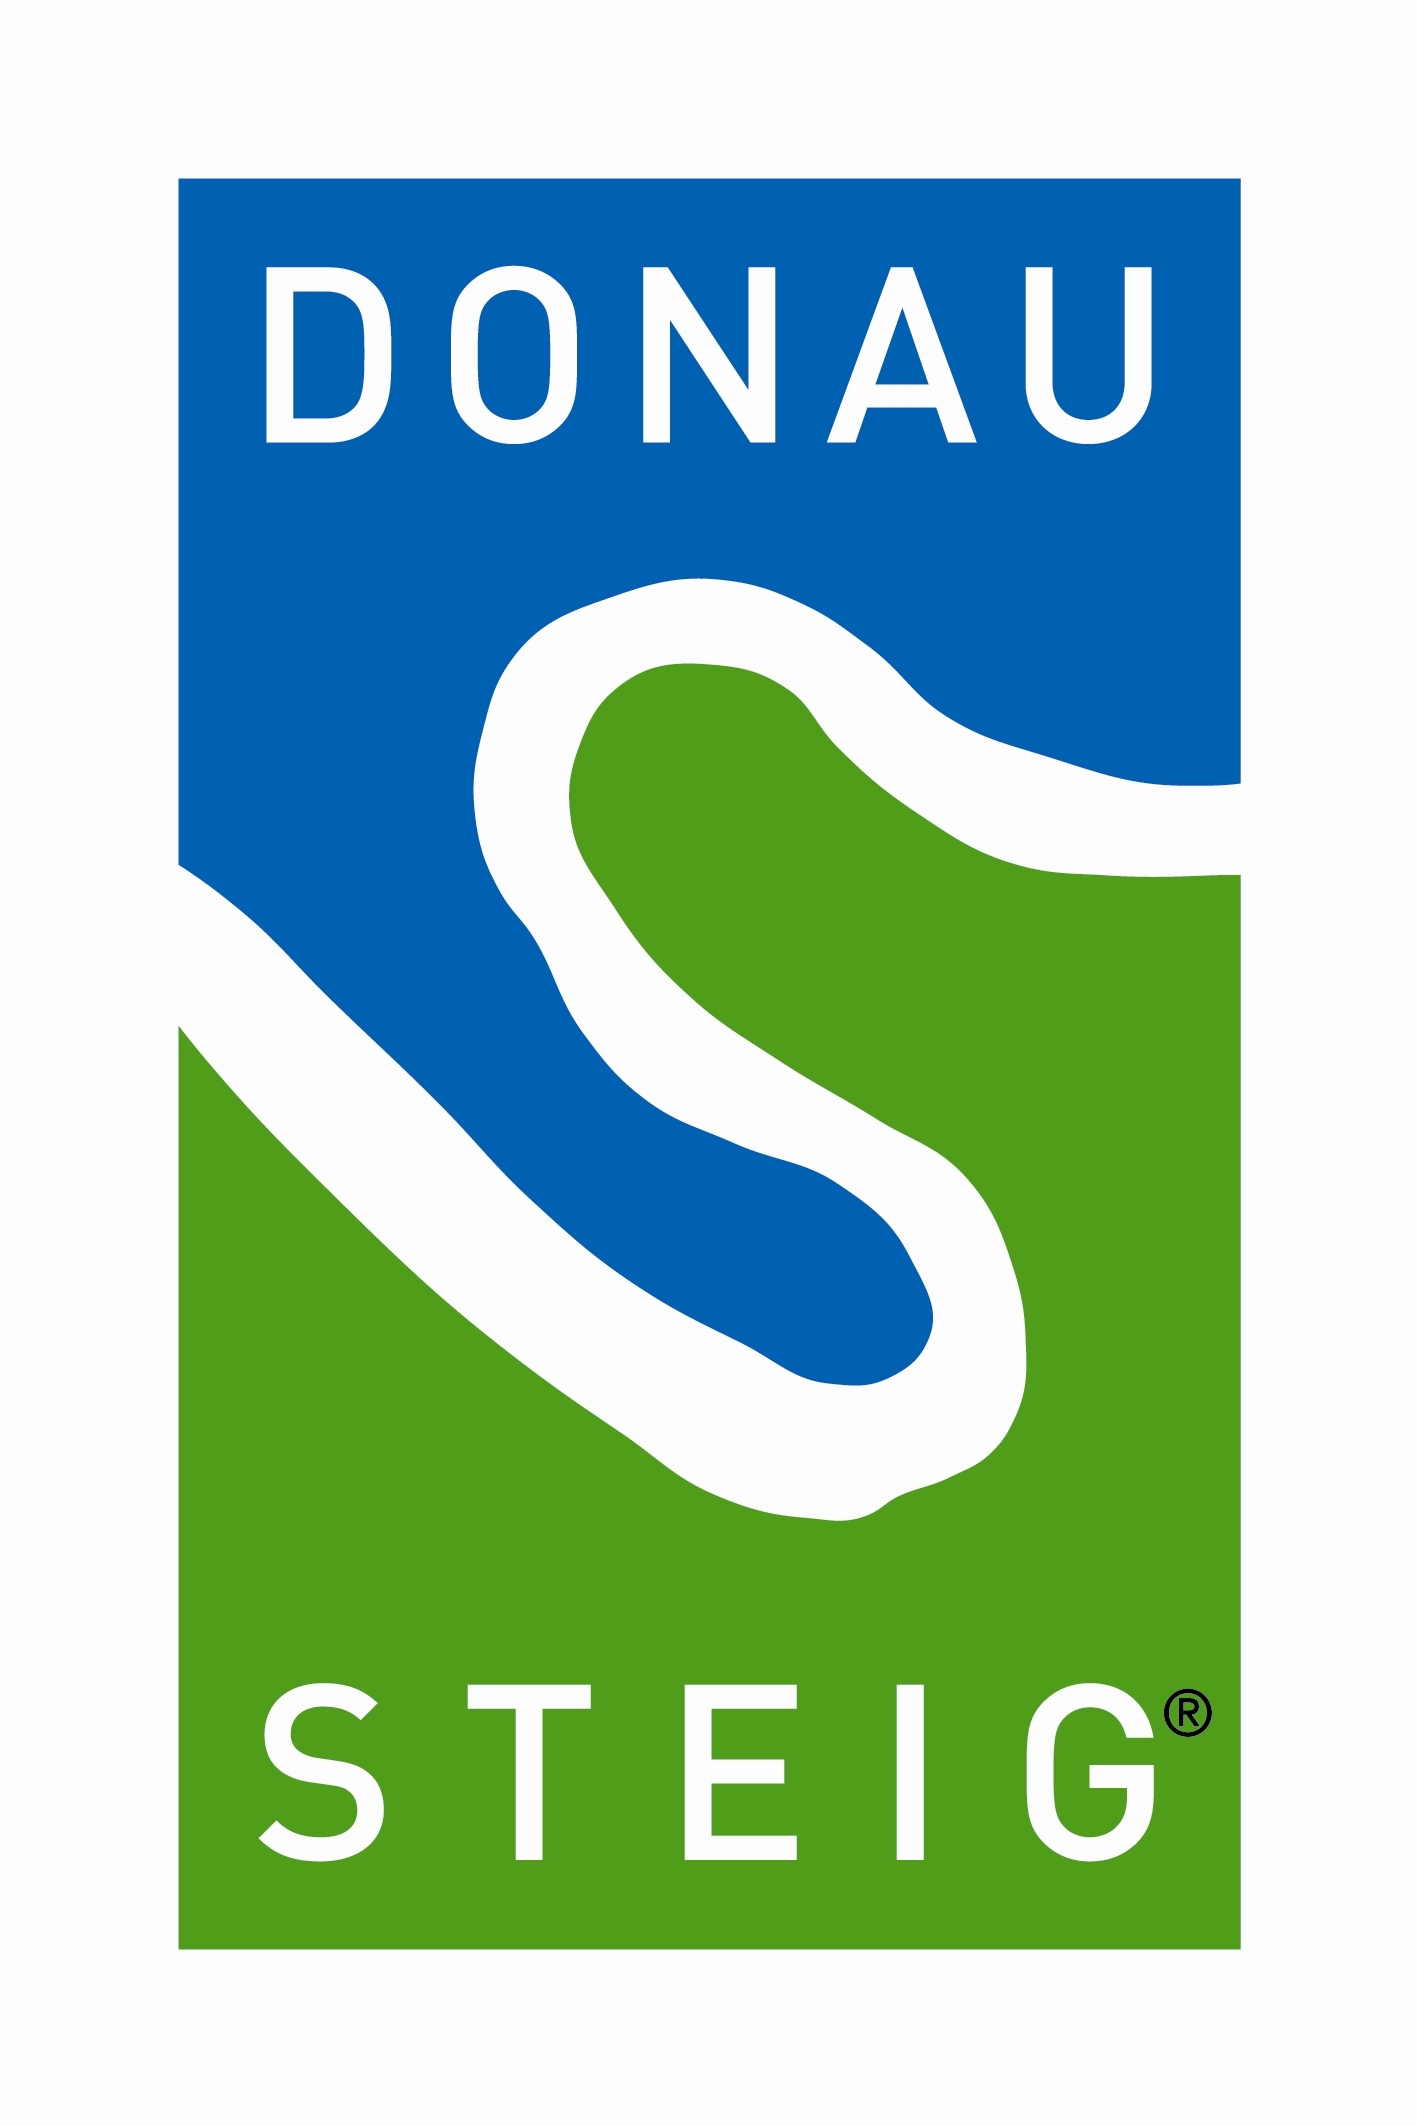 Donausteig_Logo 